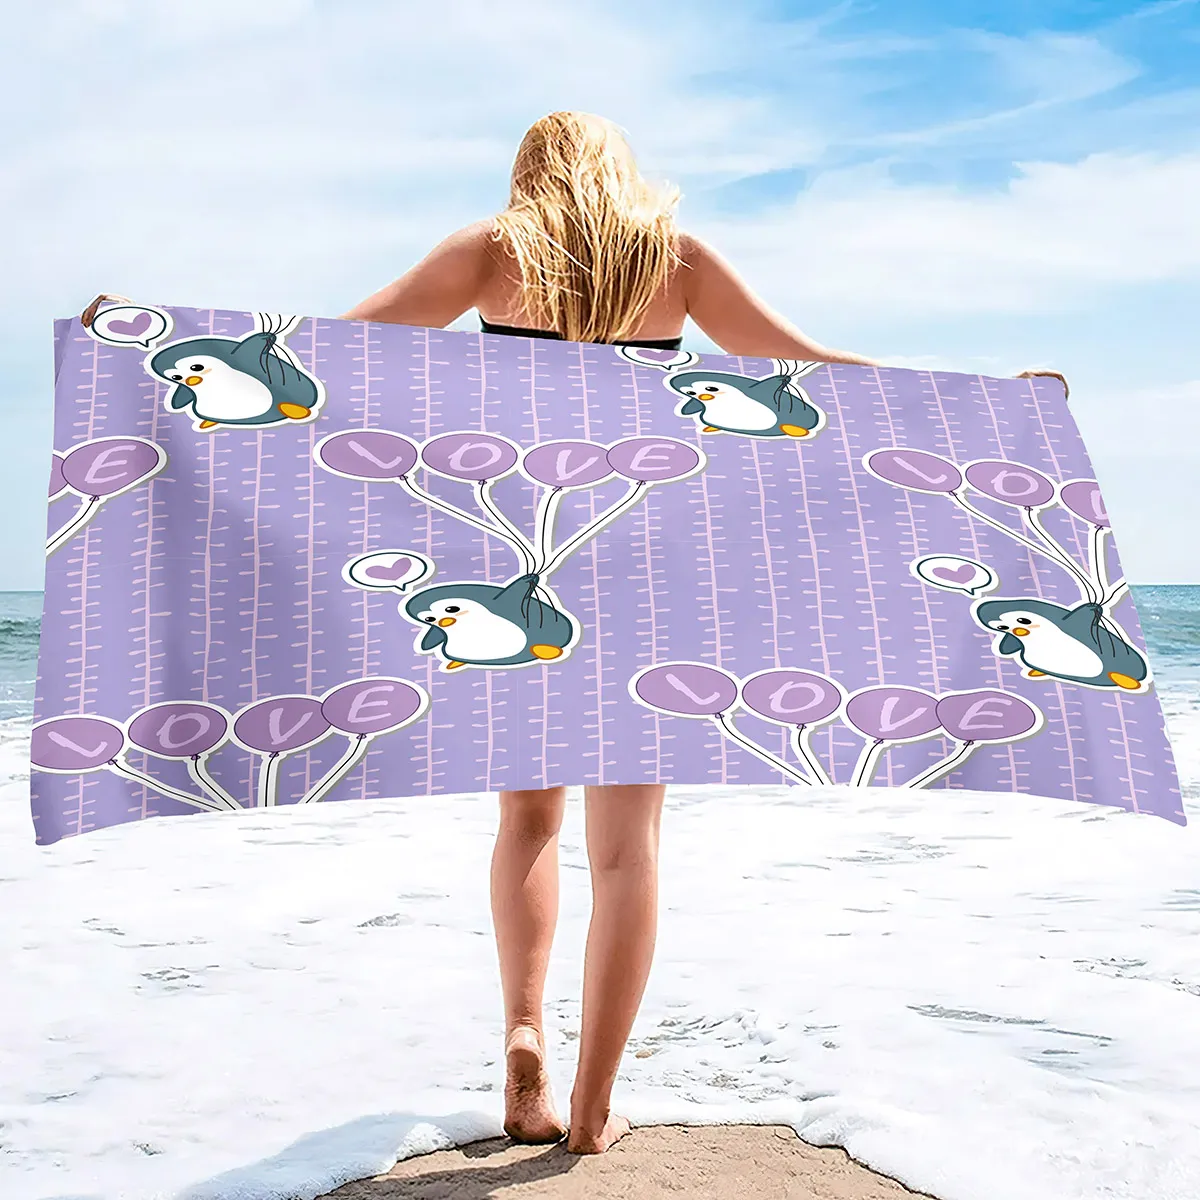 Pingwin Bird Bachowe Ręczniki Szybko suche mikrofibry miękki i chłonny ręcznik do kąpieli na zewnątrz Podróżowy piasek Bezpłatny ręcznik plażowy